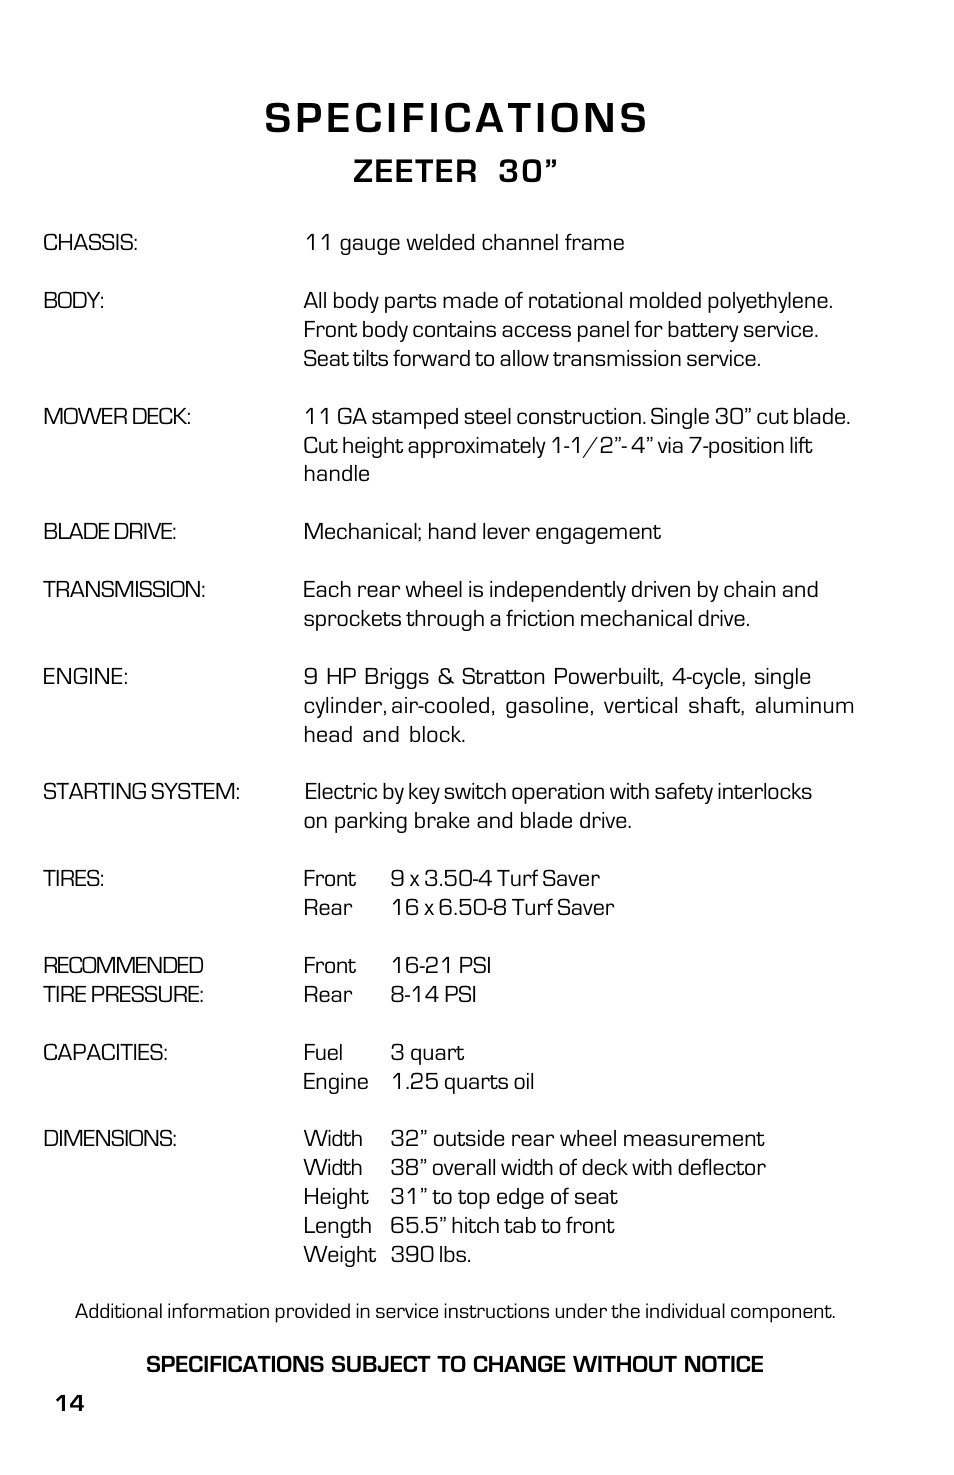 Specifications, Zeeter 30 | Dixon SpeedZTR ZTR 30 User Manual | Page 14